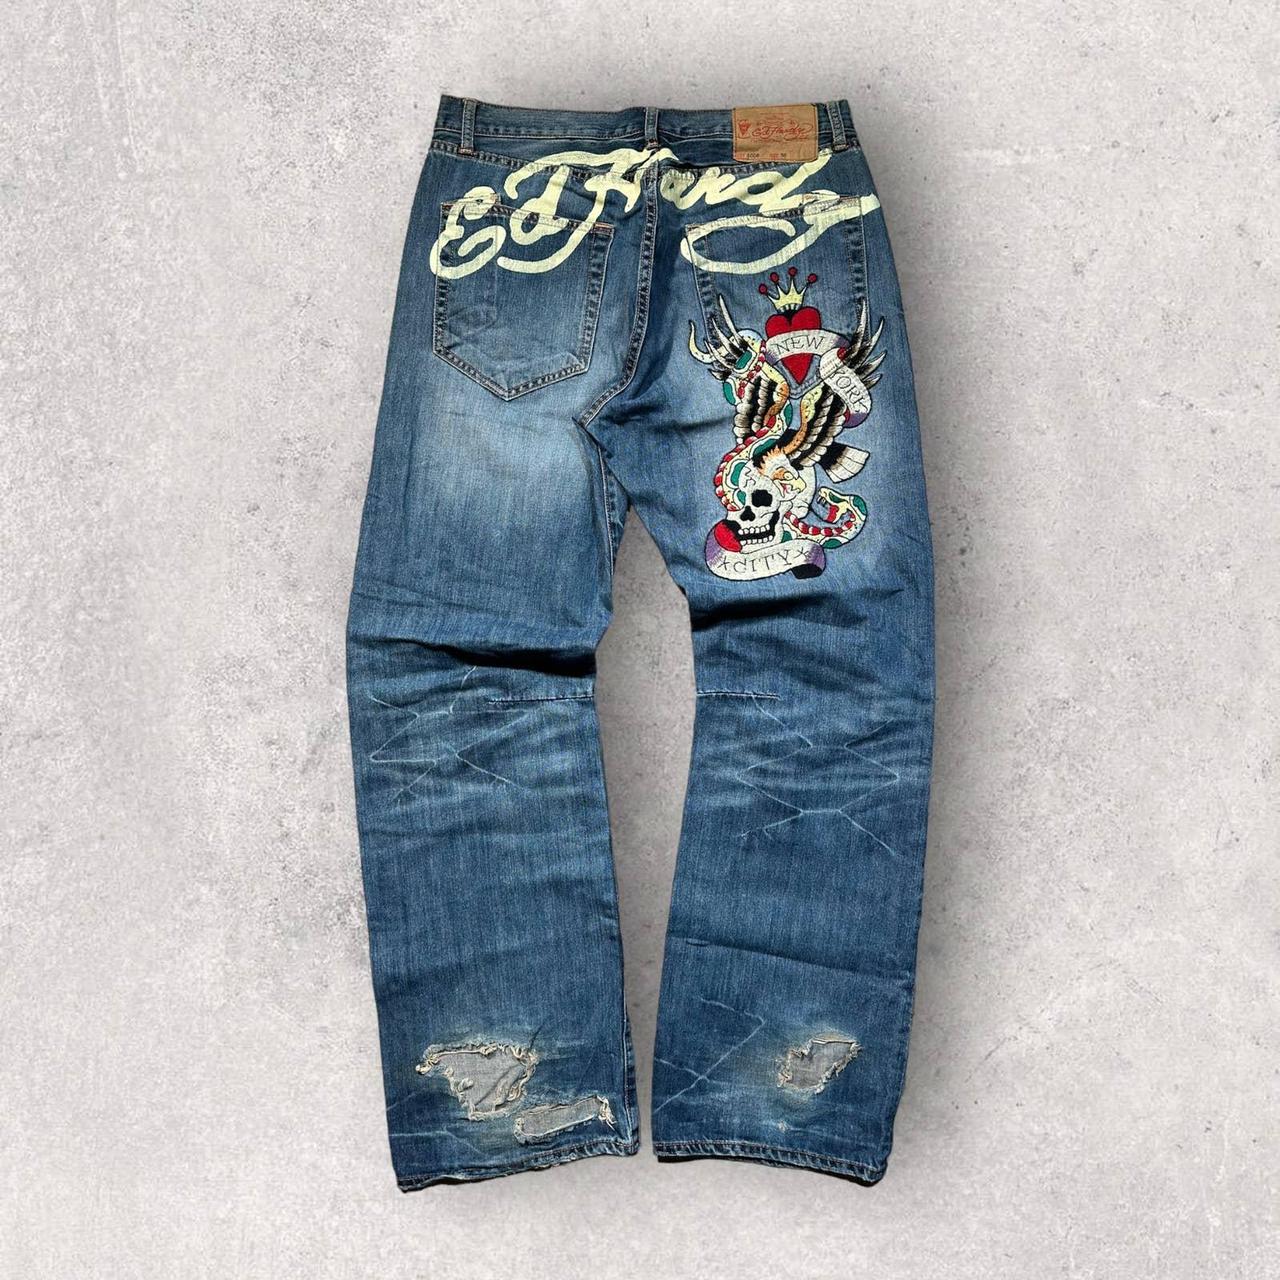 Crazy Vintage Y2K Ed Hardy Jeans 36x34 Embroidered... - Depop